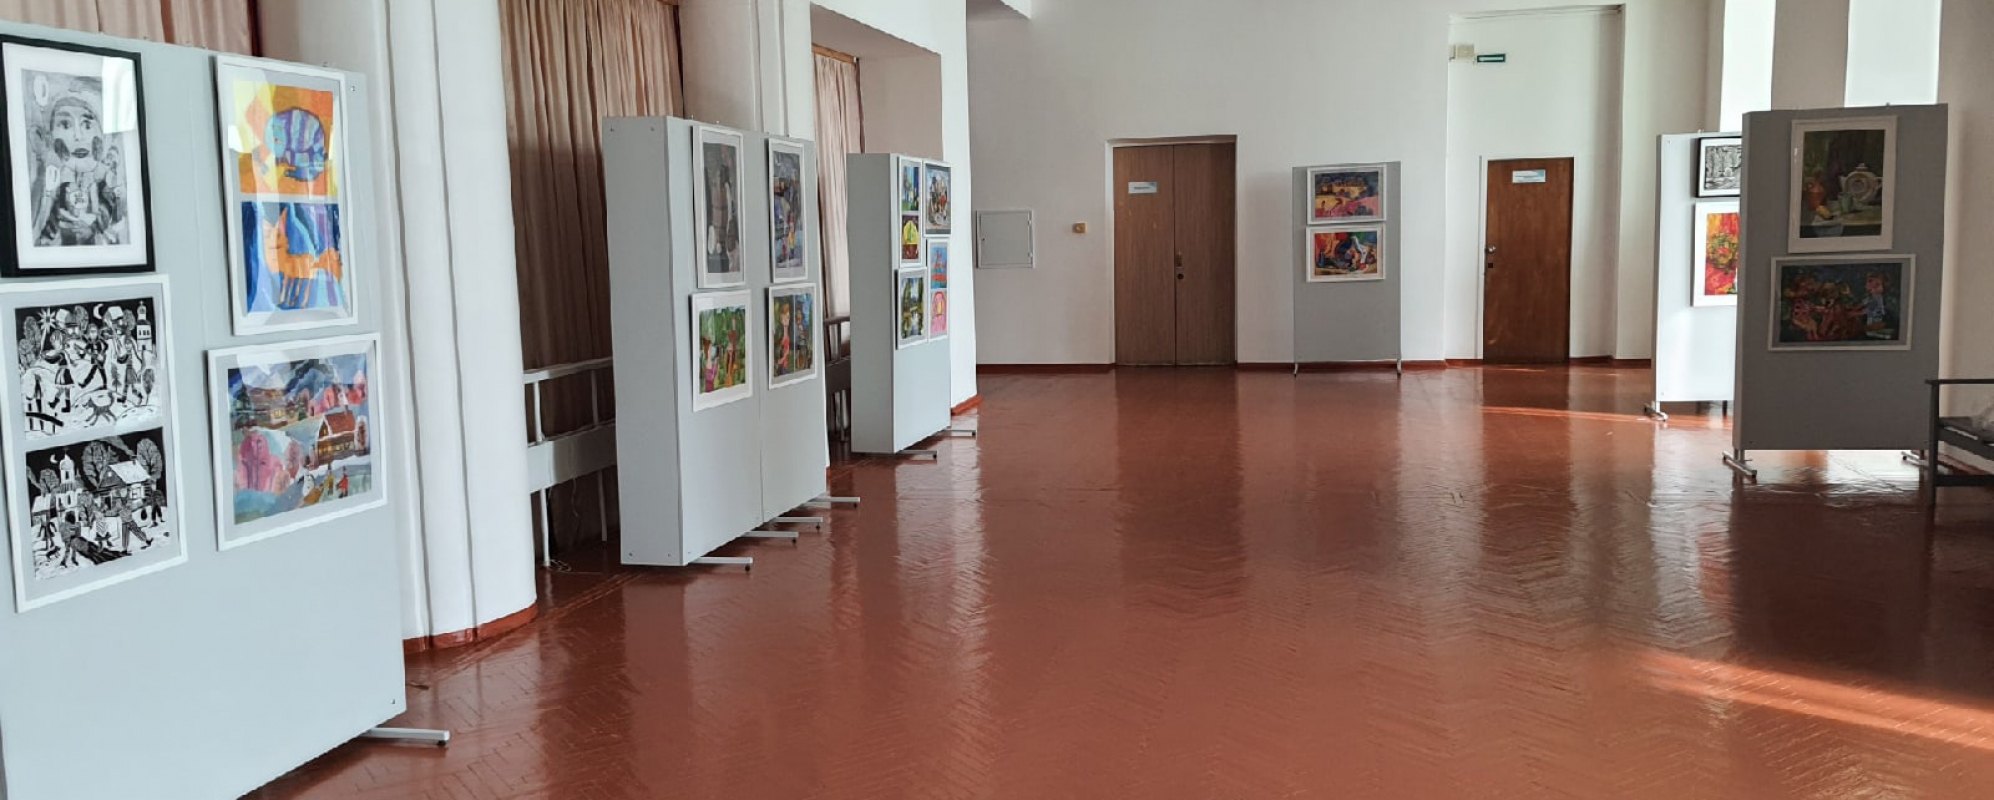 Фотографии выставочного зала Выставочный зал ГЦНТ